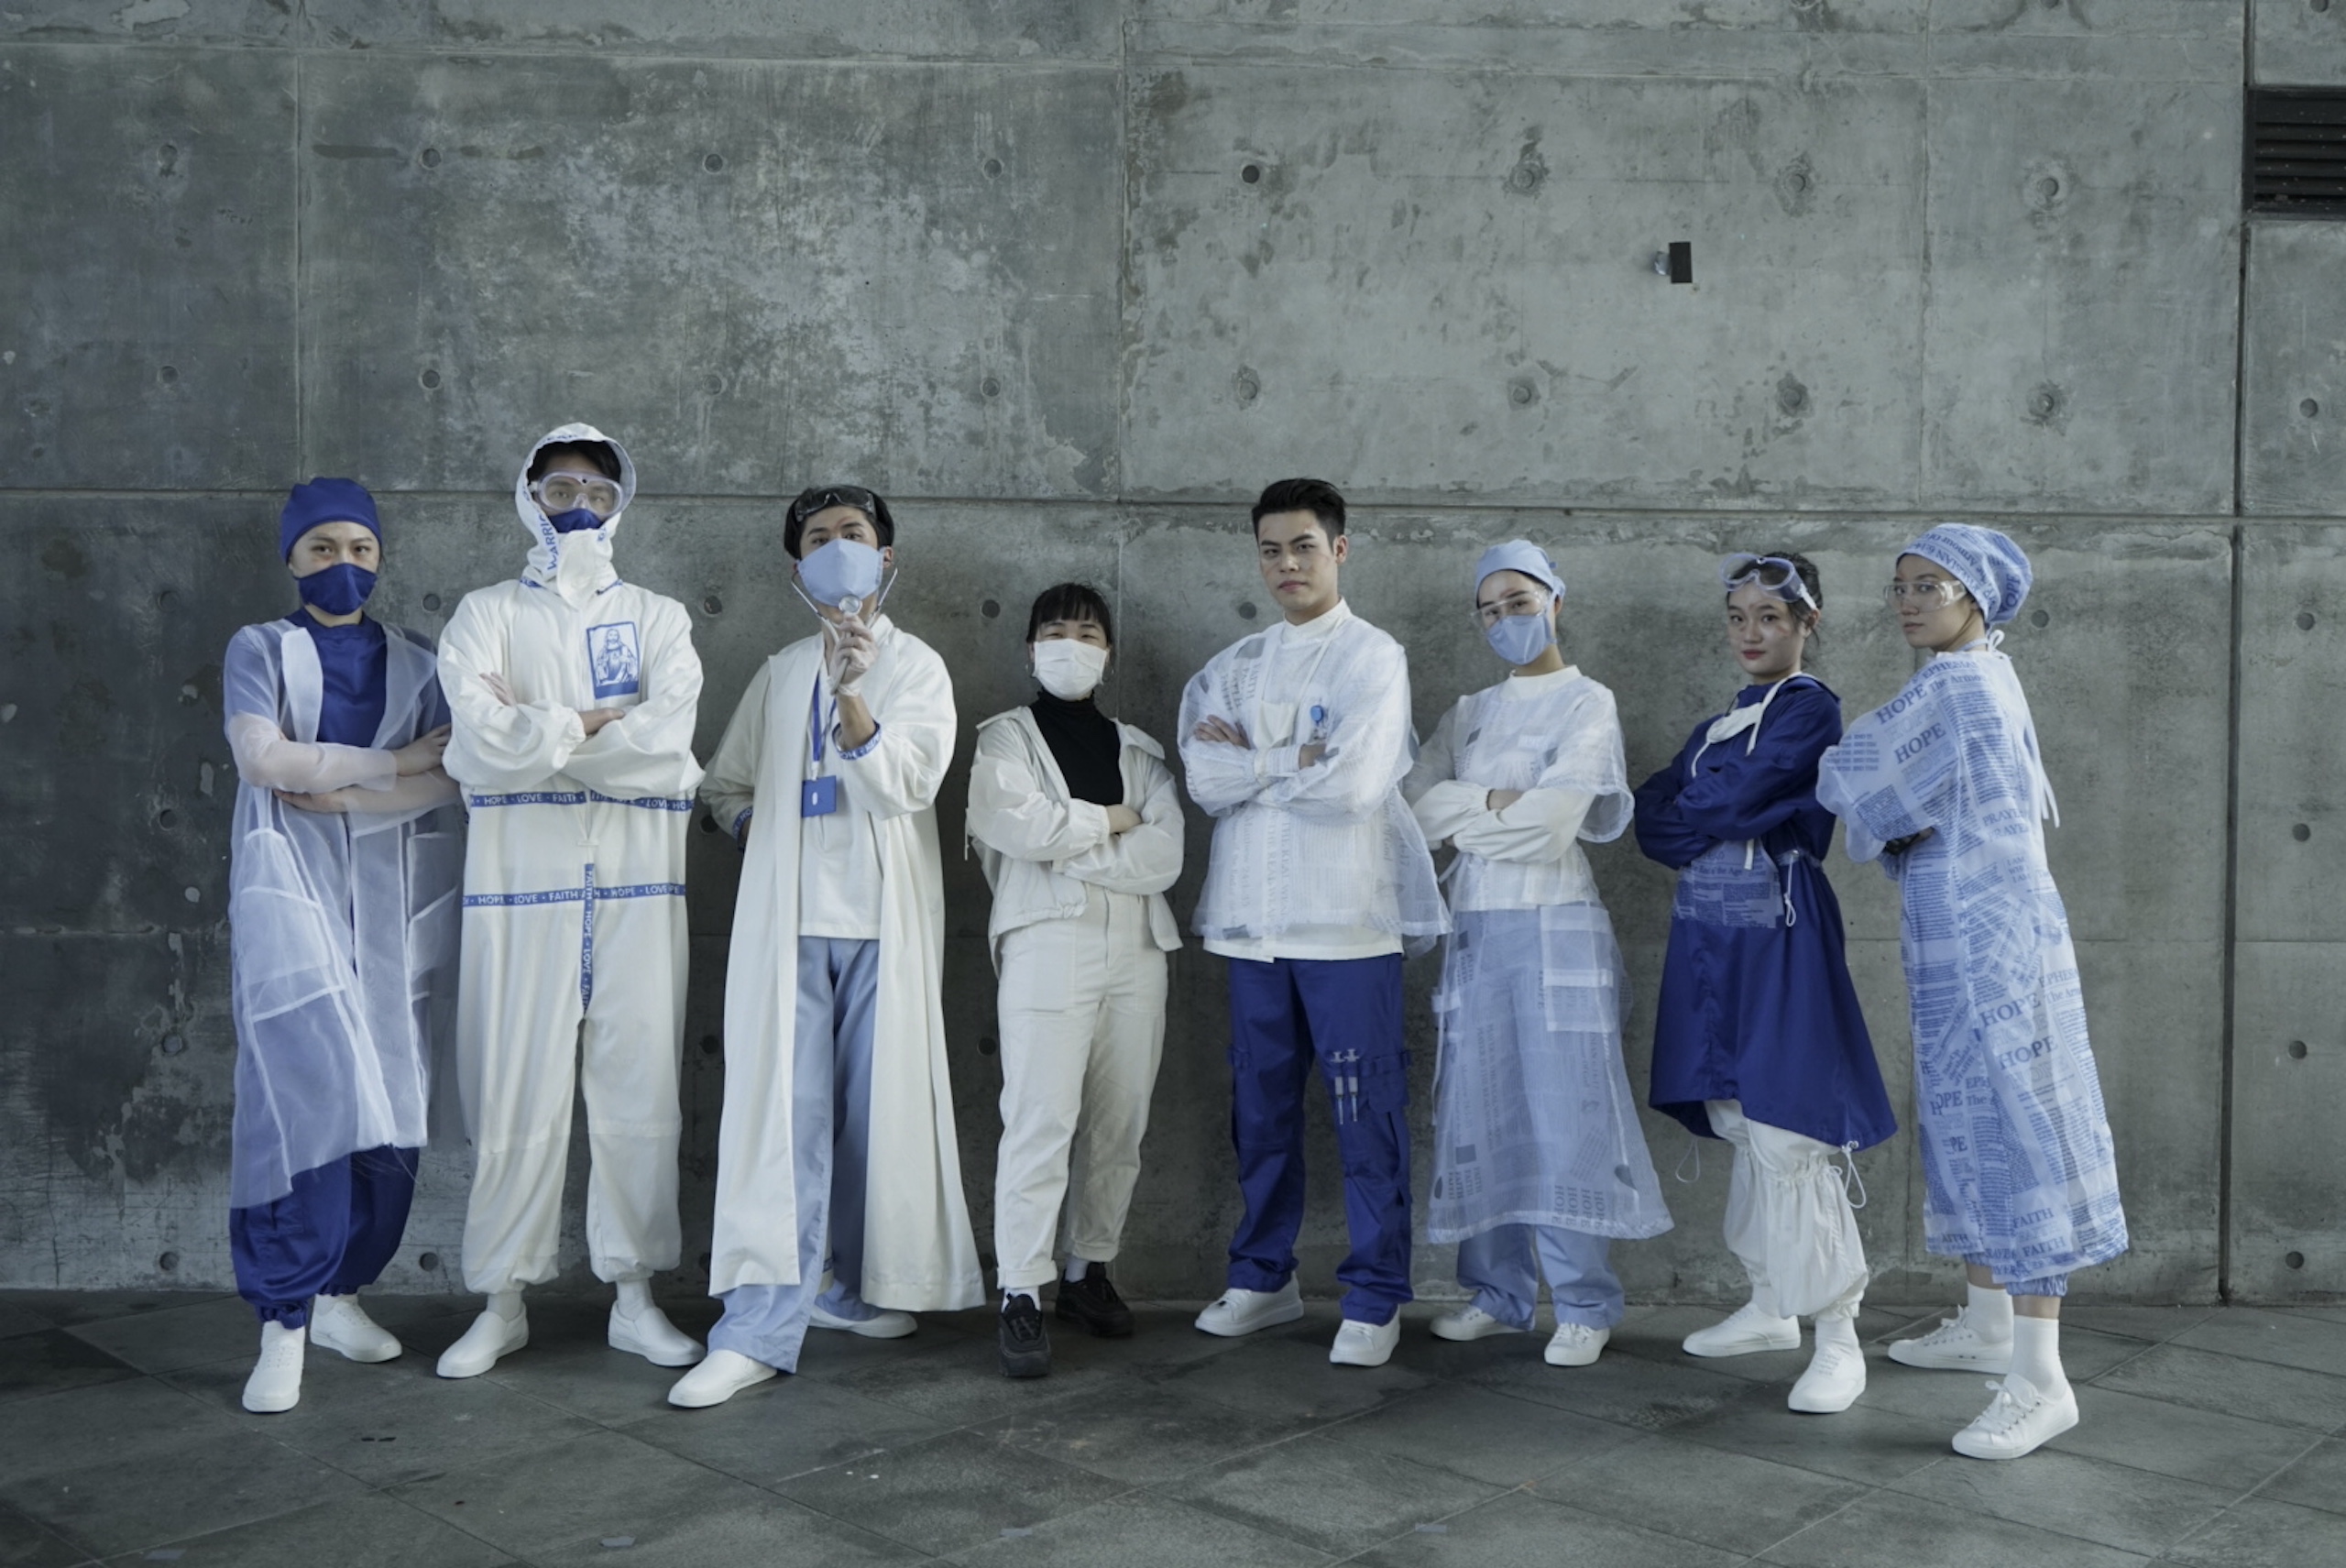 大馬生設計「末後的戰袍」致敬醫護    躍上台北時裝週